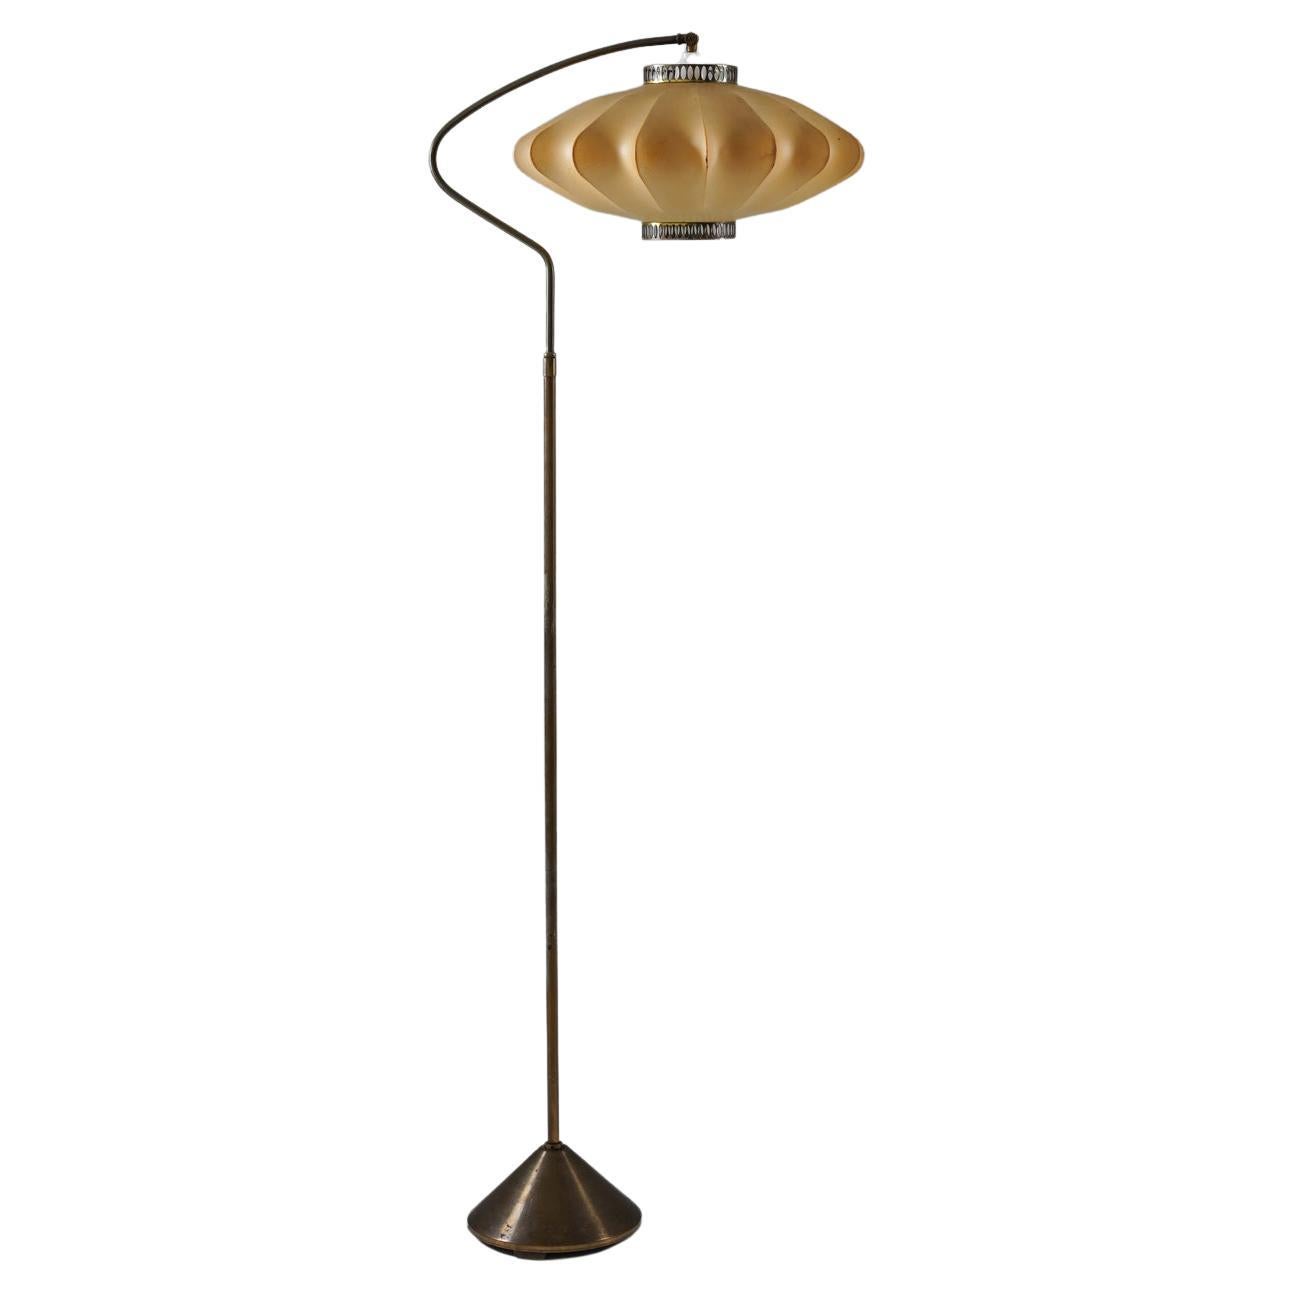 Scandinavian Floor Lamp in Brass with Cocoon Shade